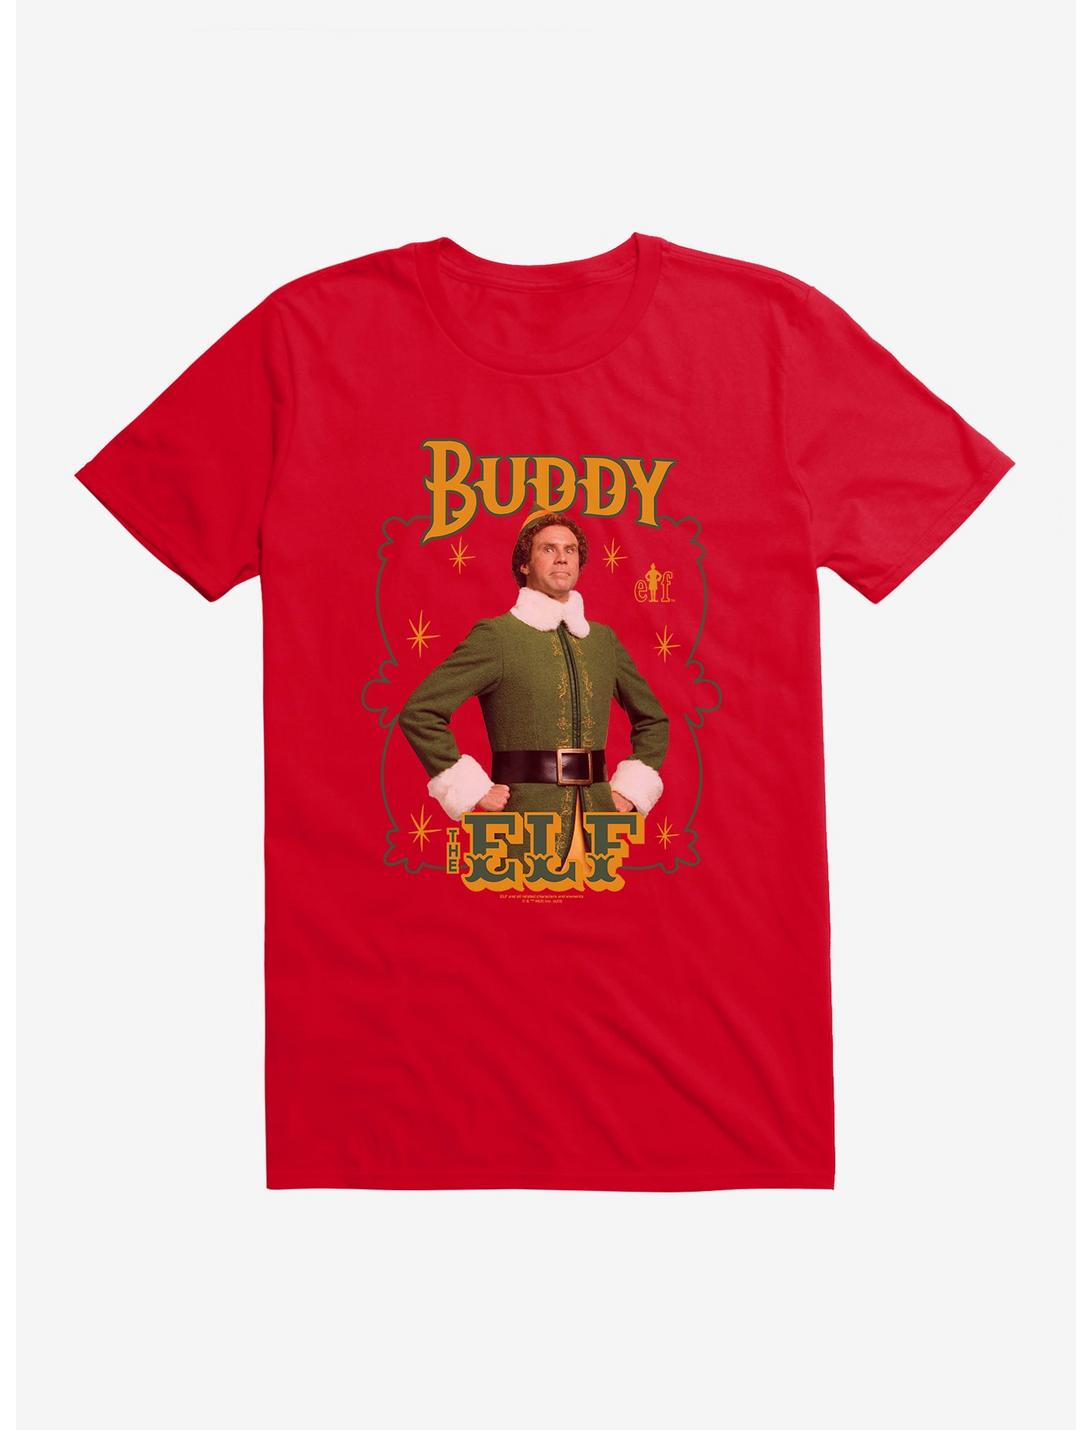 Elf Buddy The Elf T-Shirt, , hi-res